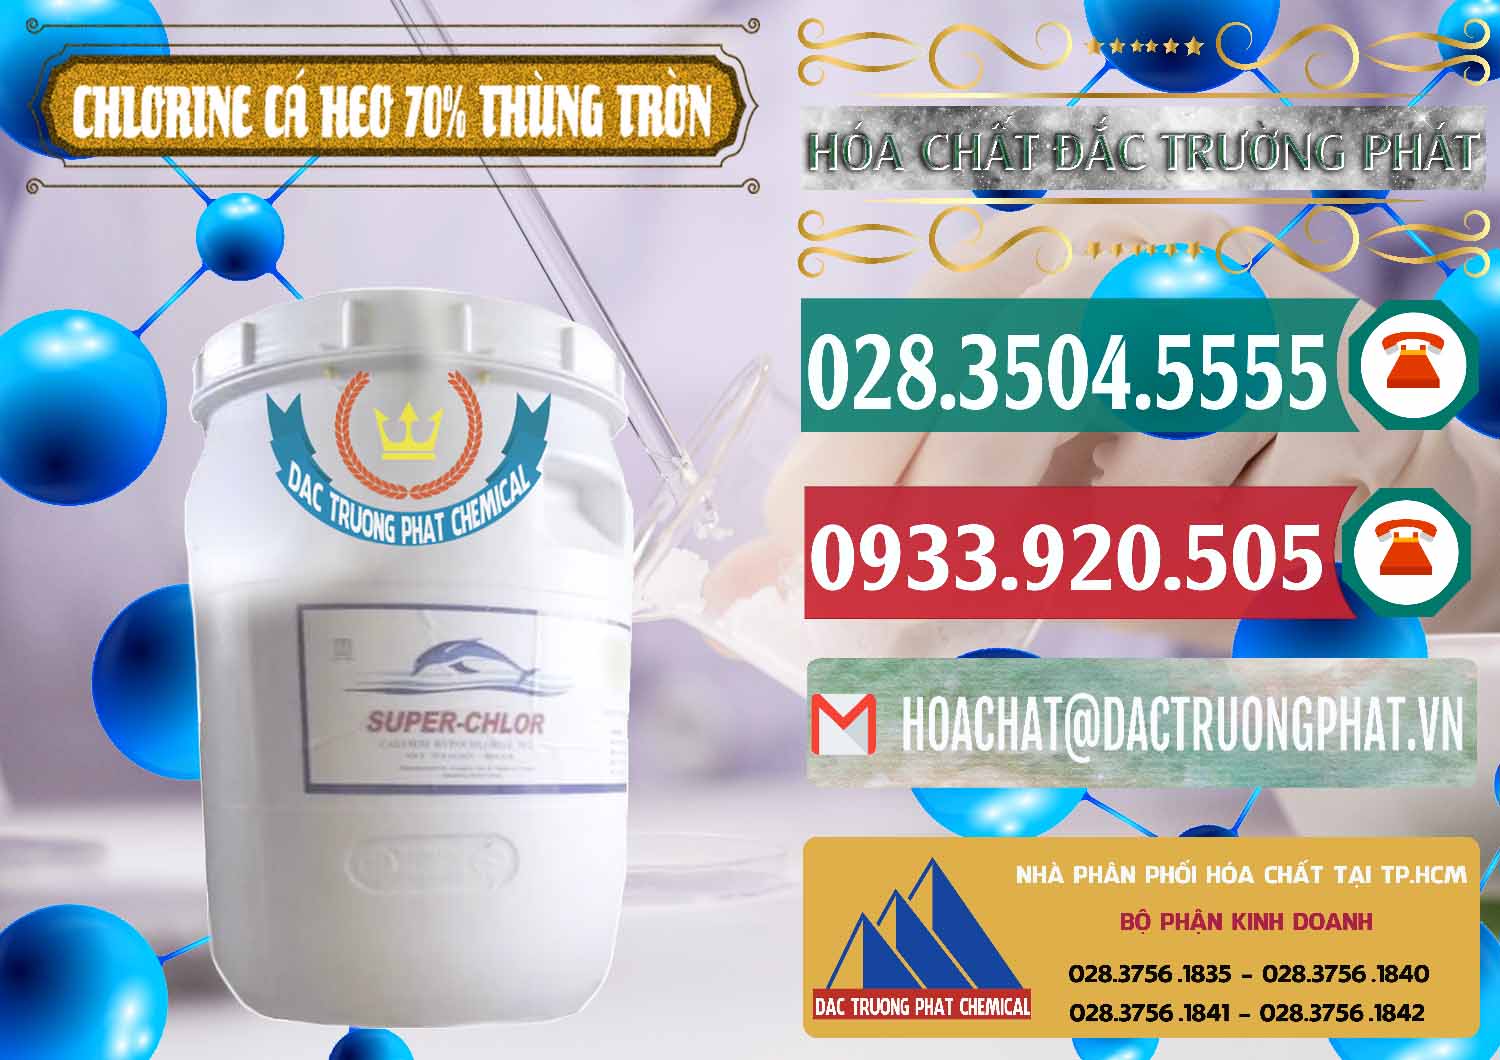 Cty chuyên kinh doanh và bán Clorin - Chlorine Cá Heo 70% Super Chlor Thùng Tròn Nắp Trắng Trung Quốc China - 0239 - Chuyên phân phối và nhập khẩu hóa chất tại TP.HCM - muabanhoachat.vn